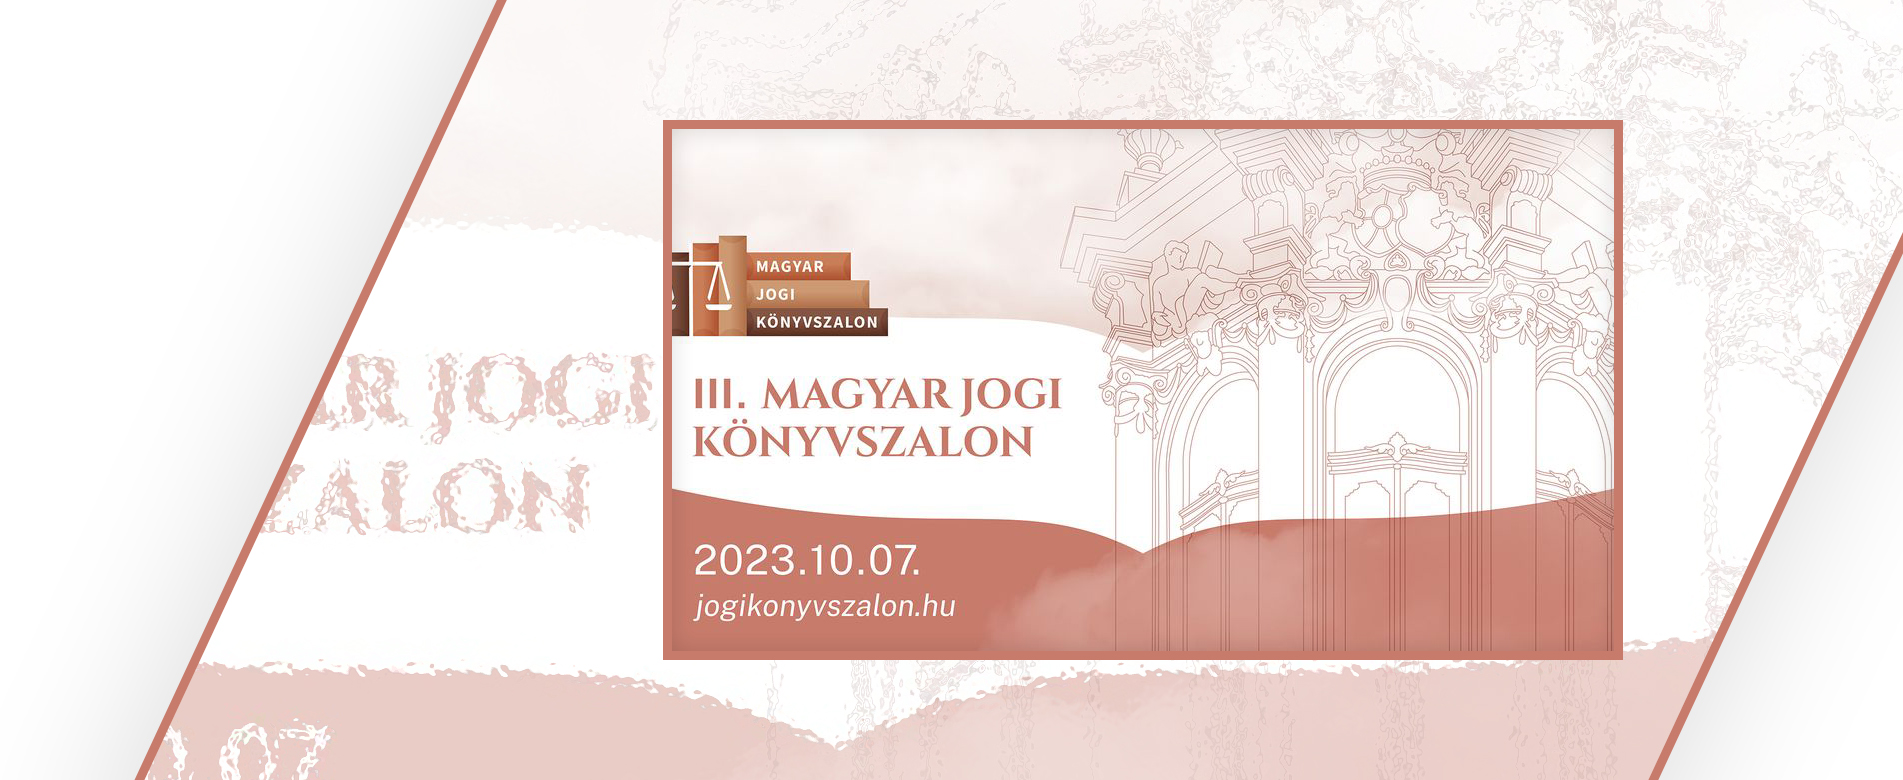  Harmadik alkalommal rendezik meg a Magyar Jogi Könyvszalont